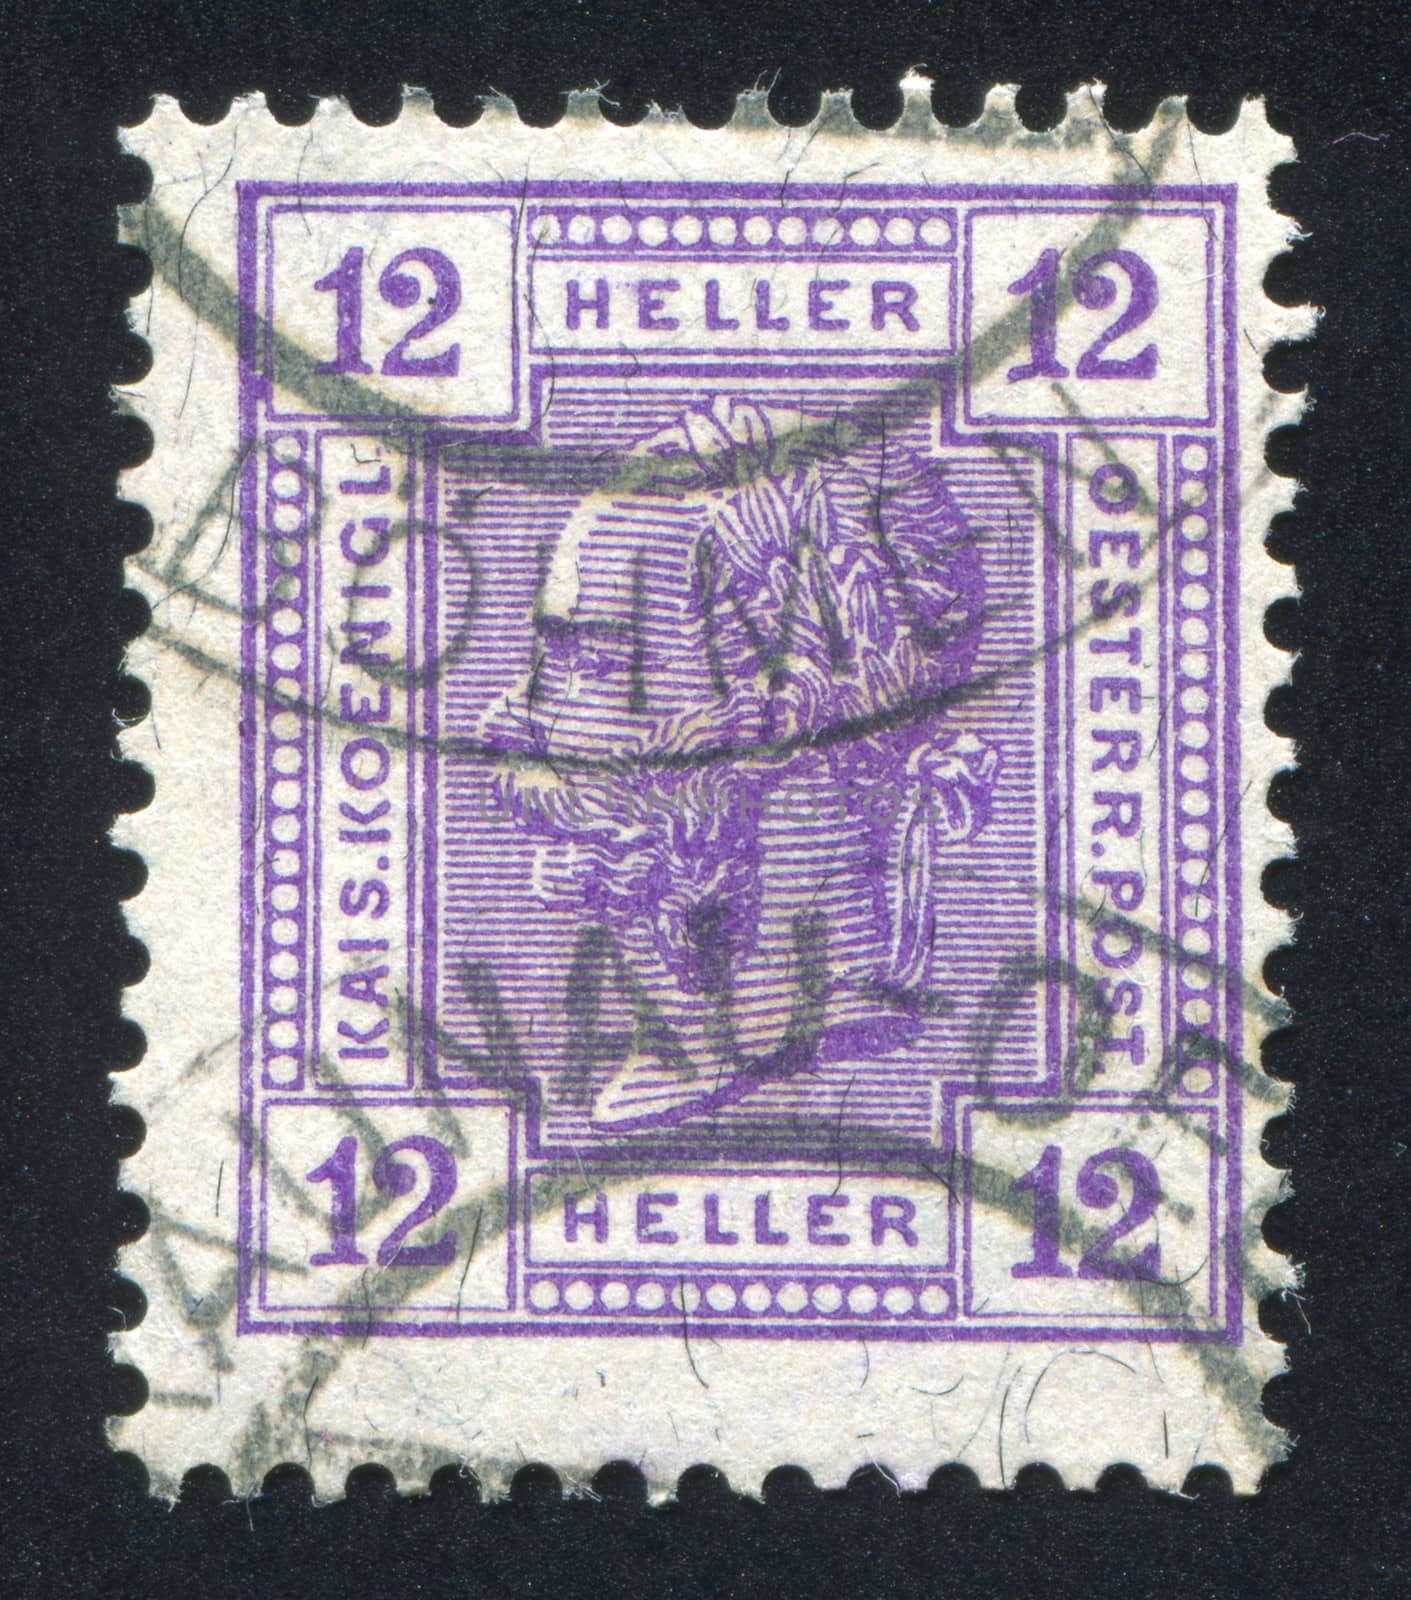 AUSTRIA - CIRCA 1907: stamp printed by Austria, shows Emperor Franz Joseph, circa 1907